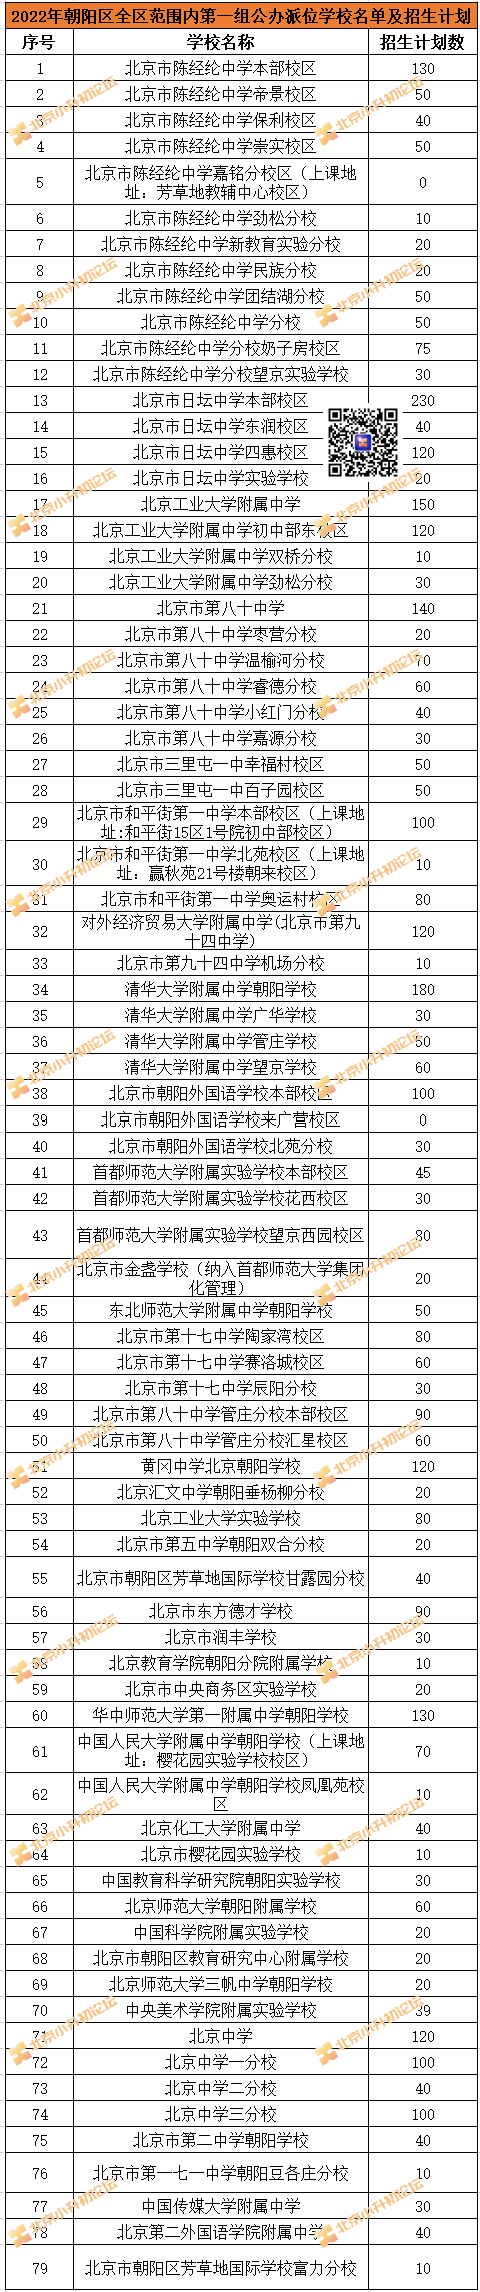 2022朝阳小升初全区范围内第一组公办派位学校名单及招生计划